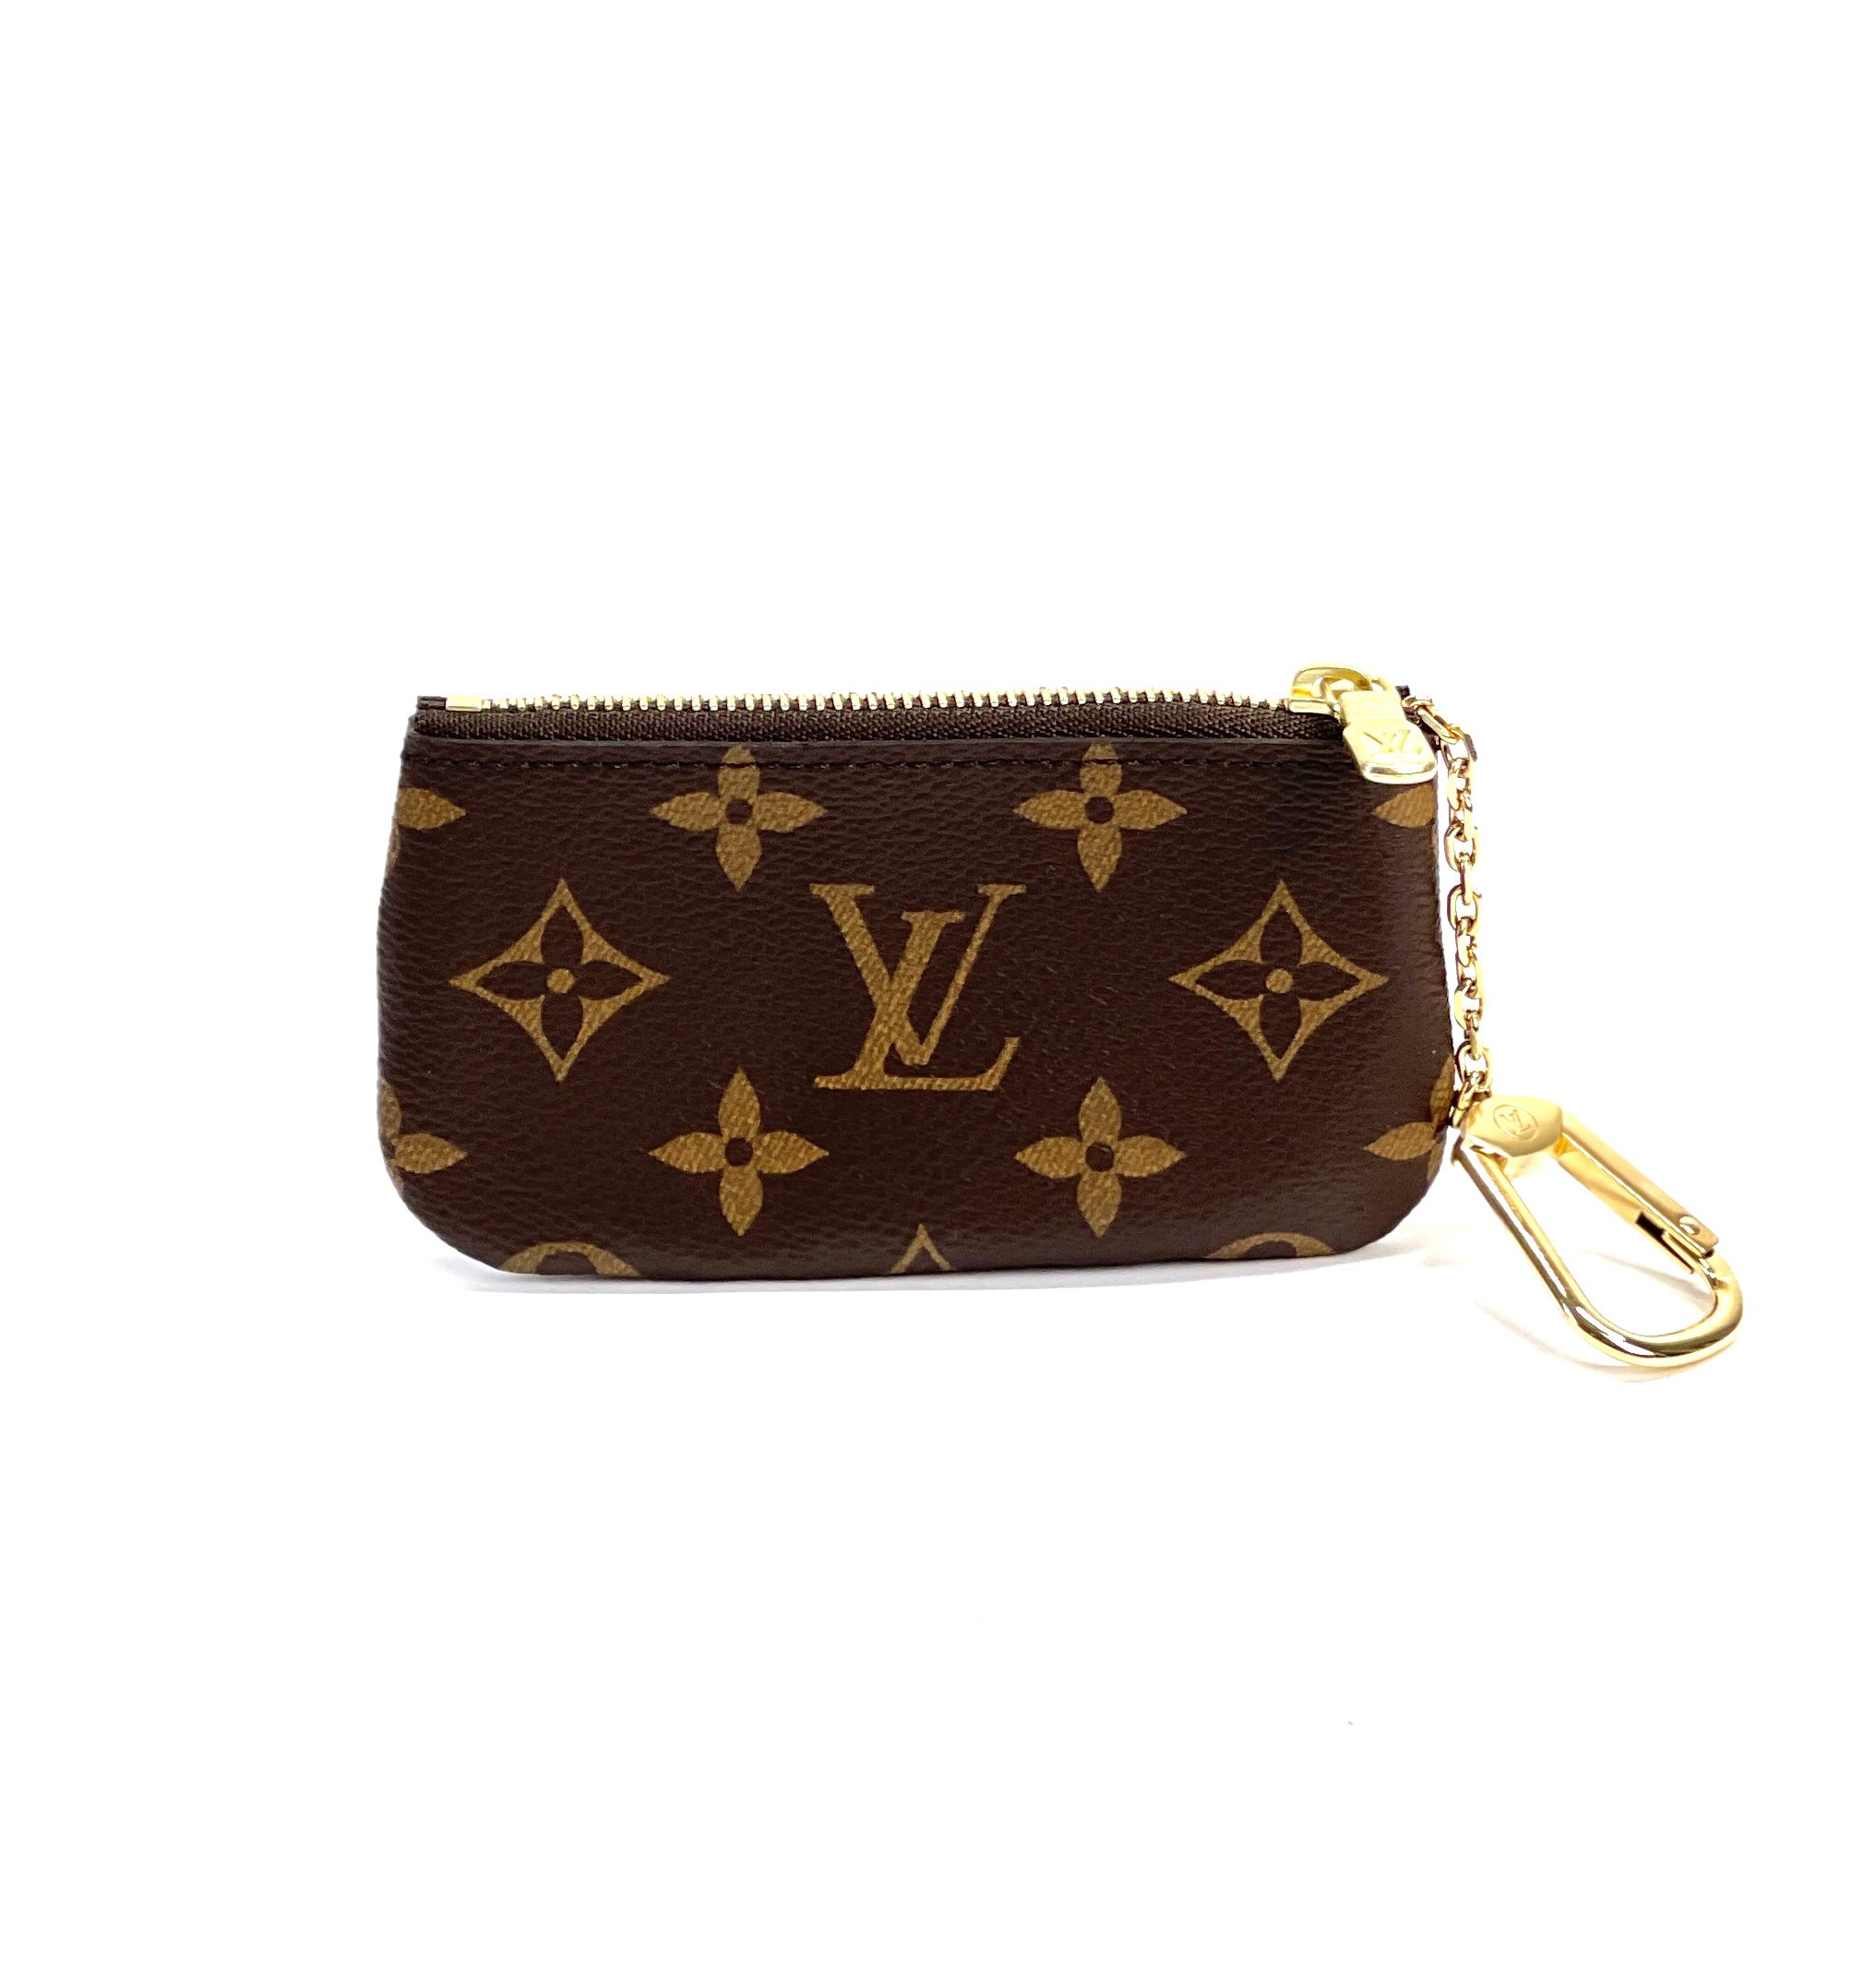 Louis+Vuitton+M62650+Key+Pouch for sale online